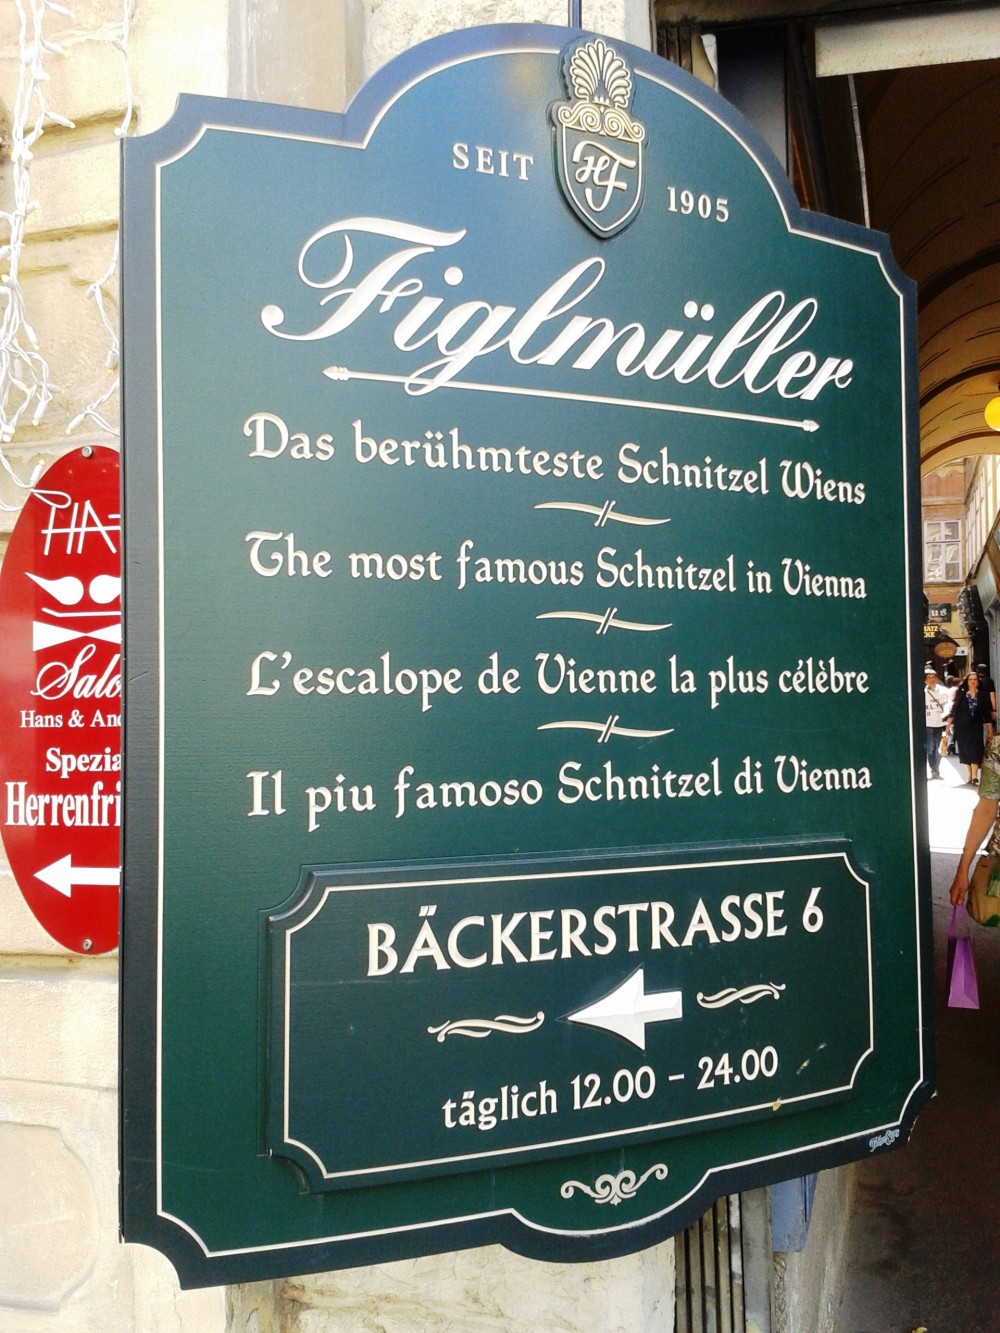 Figlmüller - Werbung für das Lokal Bäckerstraße - Figlmüller - Bäckerstraße - Wien